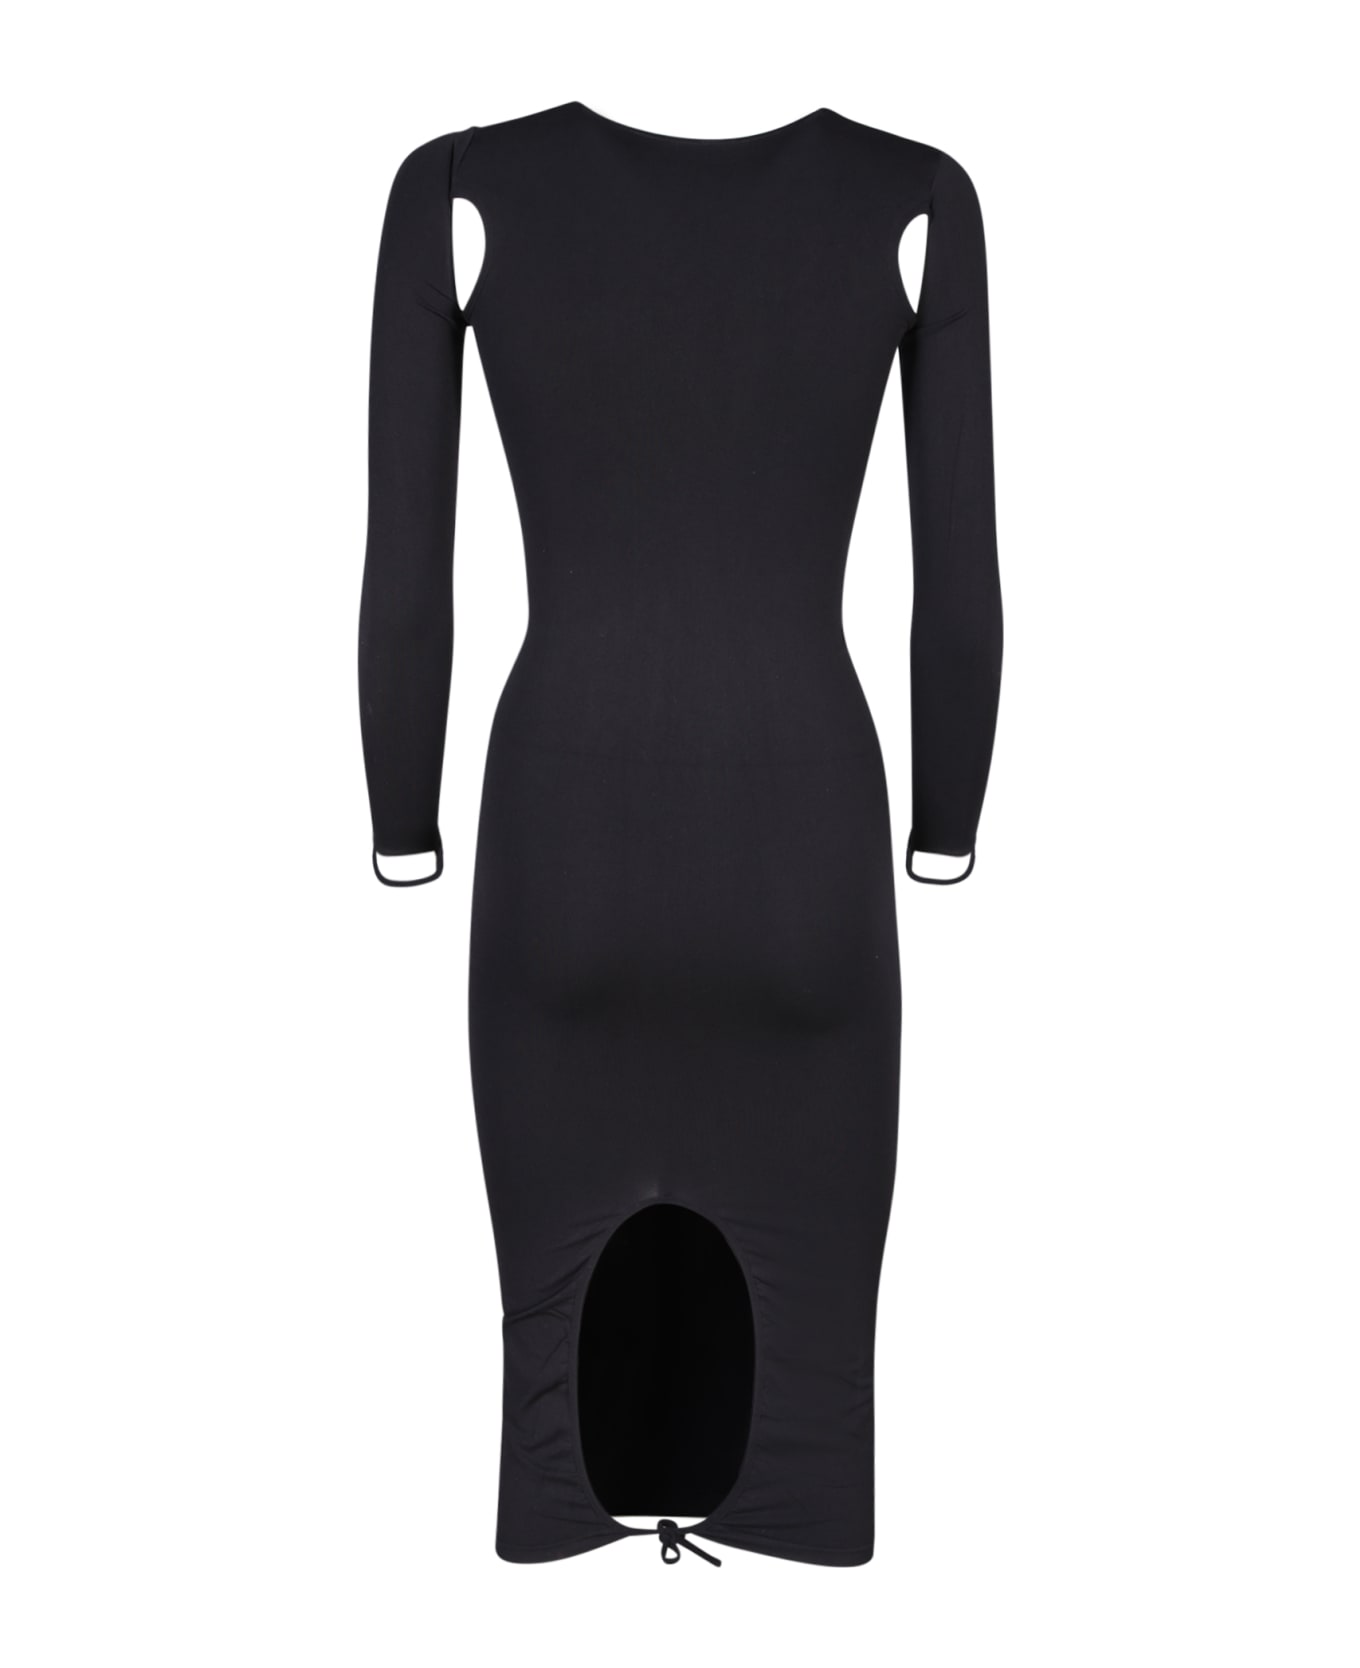 ANDREĀDAMO Cut-out Details Black Dress - Black